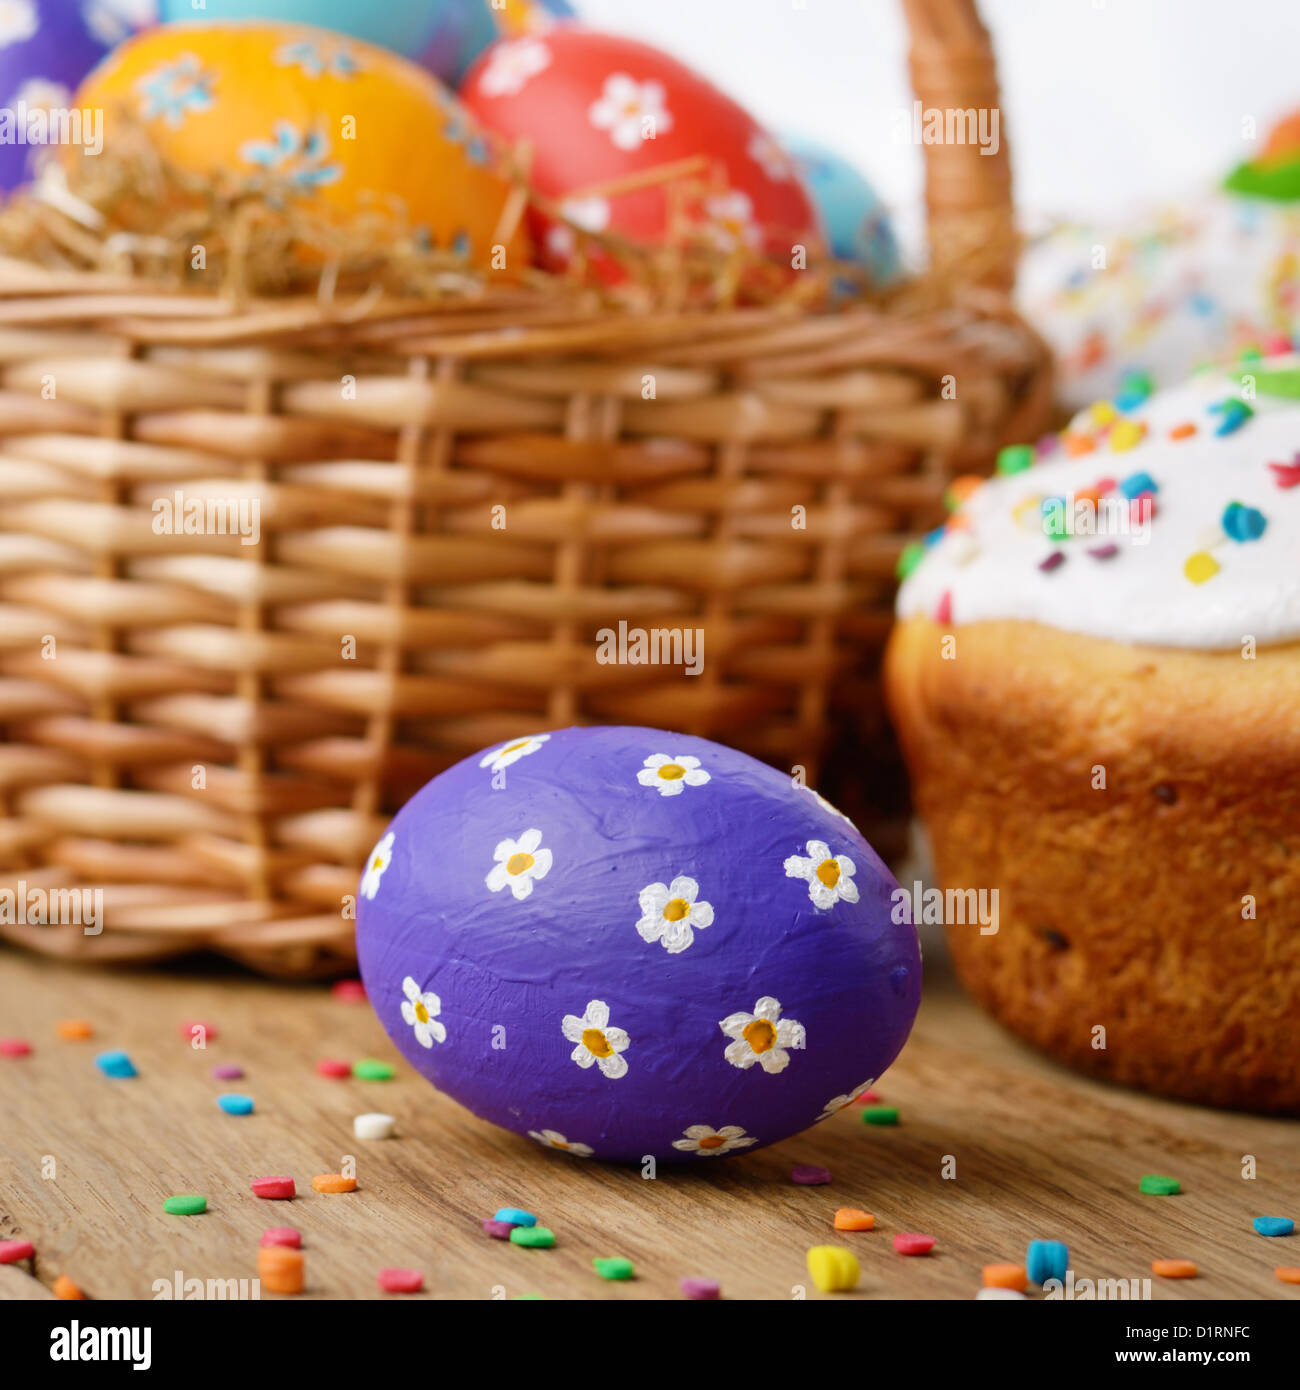 Décorations de Pâques - des œufs, des gâteaux et de panier sur le dessus de table Banque D'Images